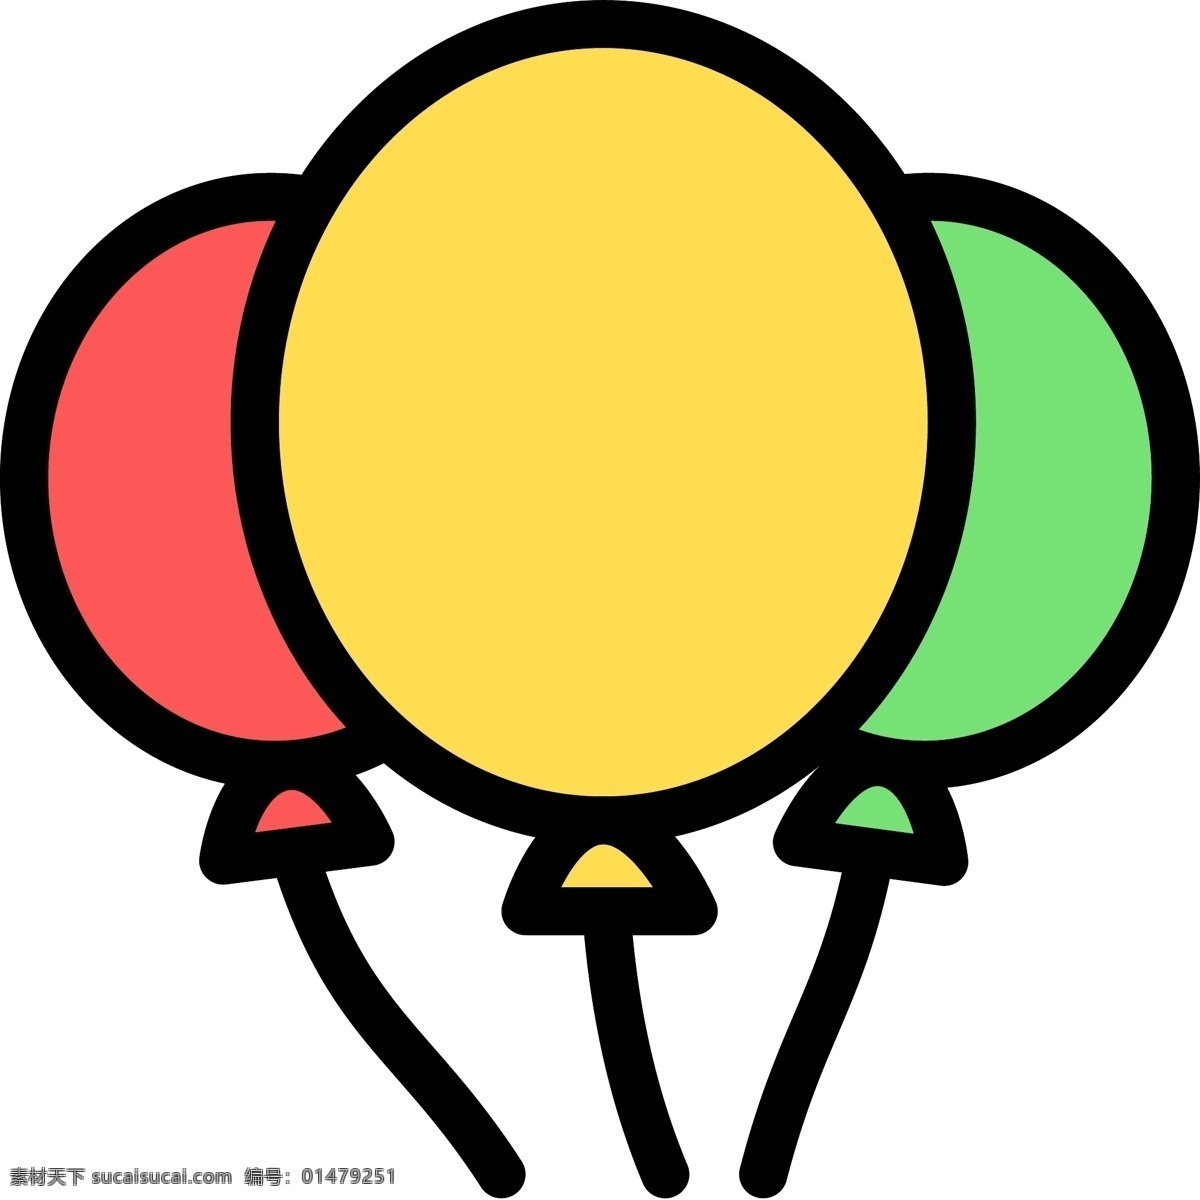 儿童节 玩具 气球 矢量图 多颜色 卡通 可爱 玩具气球 节日文件 扁平化图案 无限 放大 不 模糊